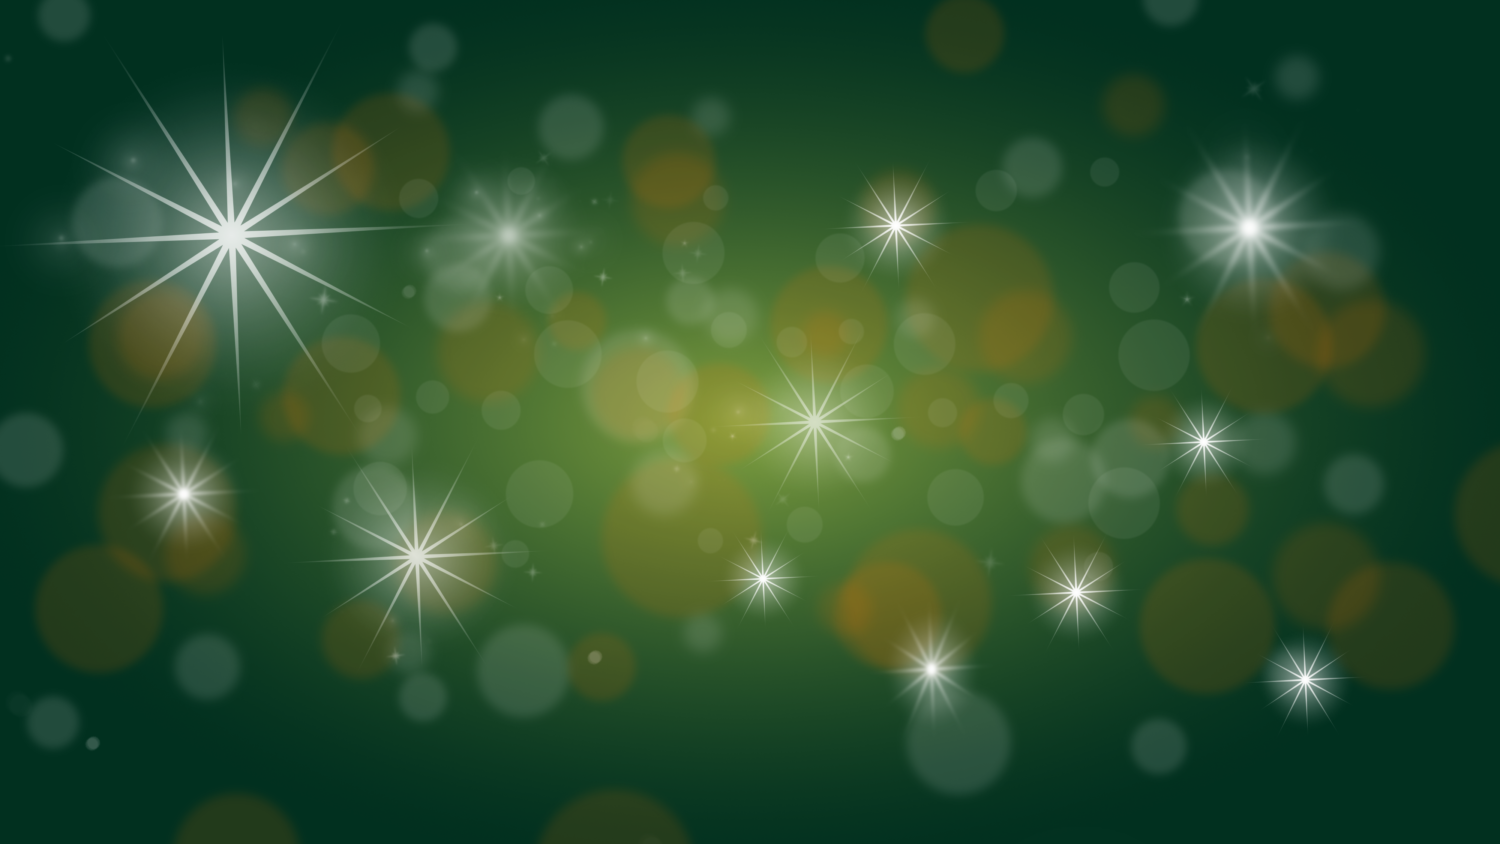 Gratis Download von iXimus.de: Weihnachten, Hintergrundbild, grün, gold, Sterne, Glitzer, #000221